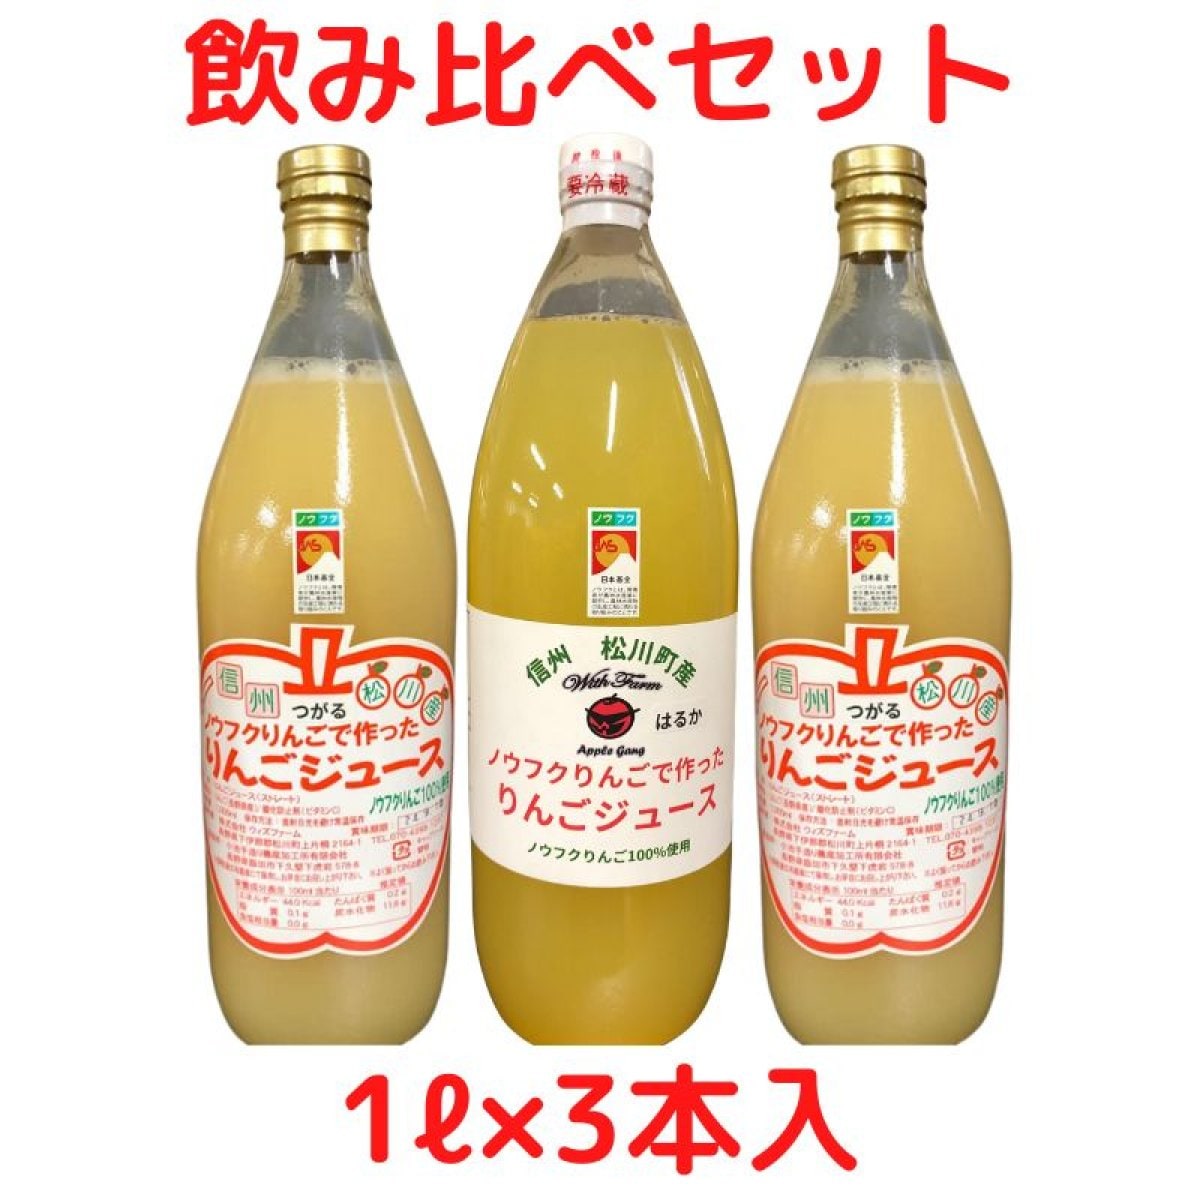 【1ℓ×3本入】ノウフクりんごで作ったりんごジュース飲み比べセット/3本